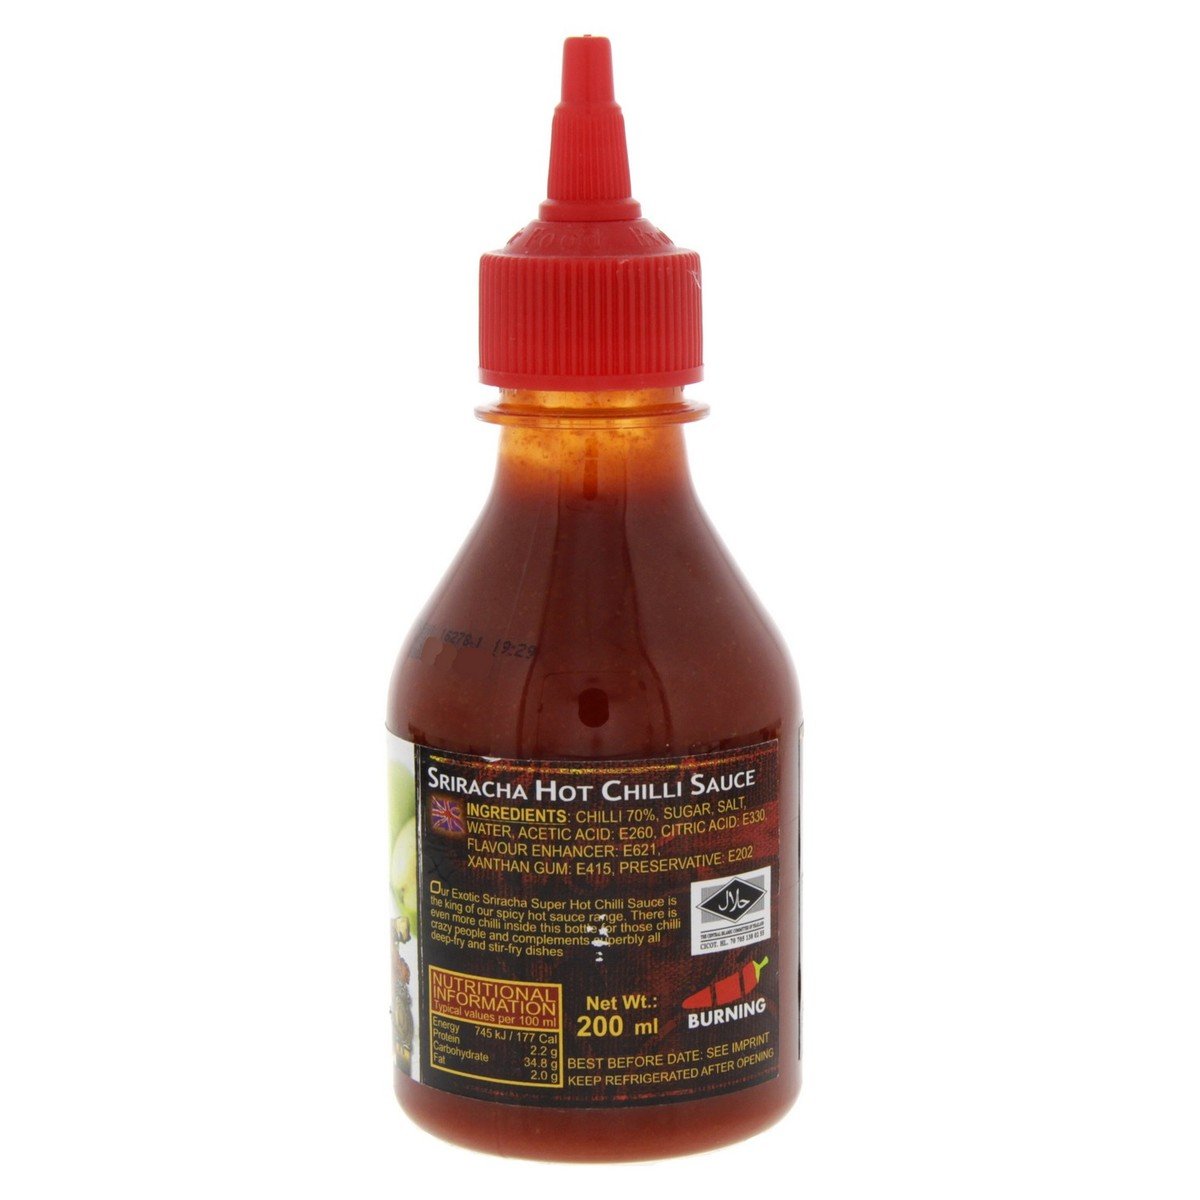 Exotic Food Sriracha Super Hot Chilli Sauce 200 ml